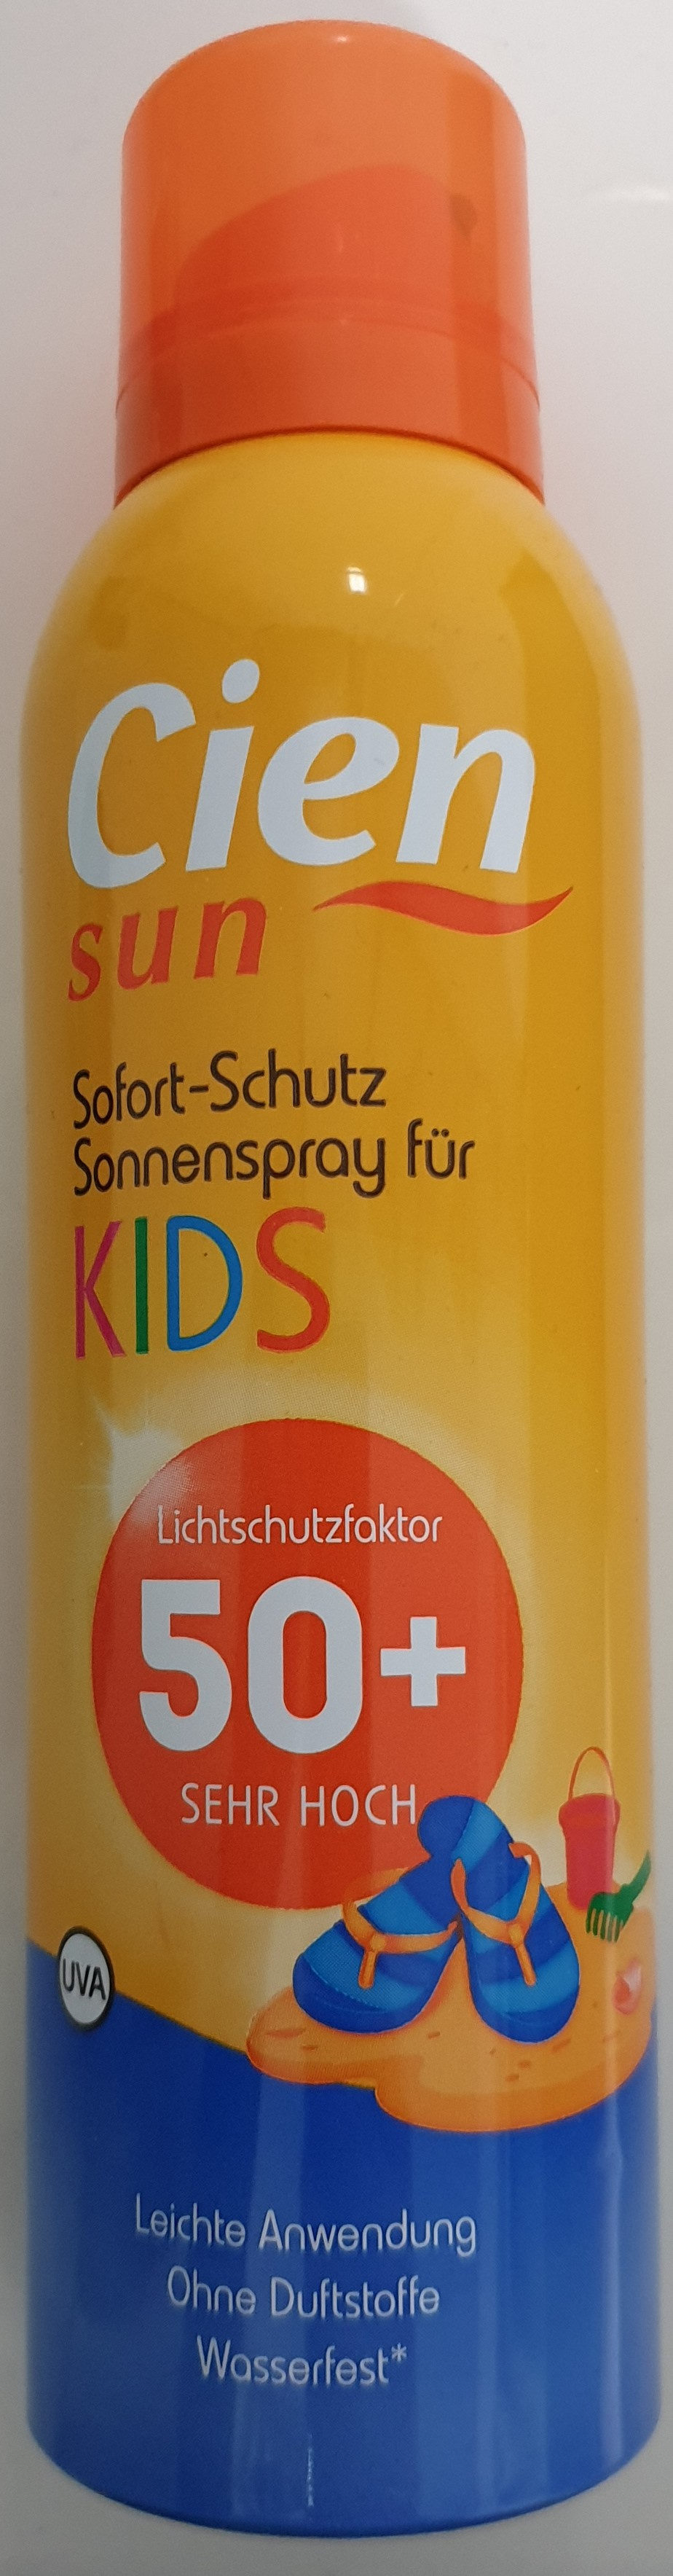 Sofort-Schutz Sonnenspray für Kids 50+ - Product - de